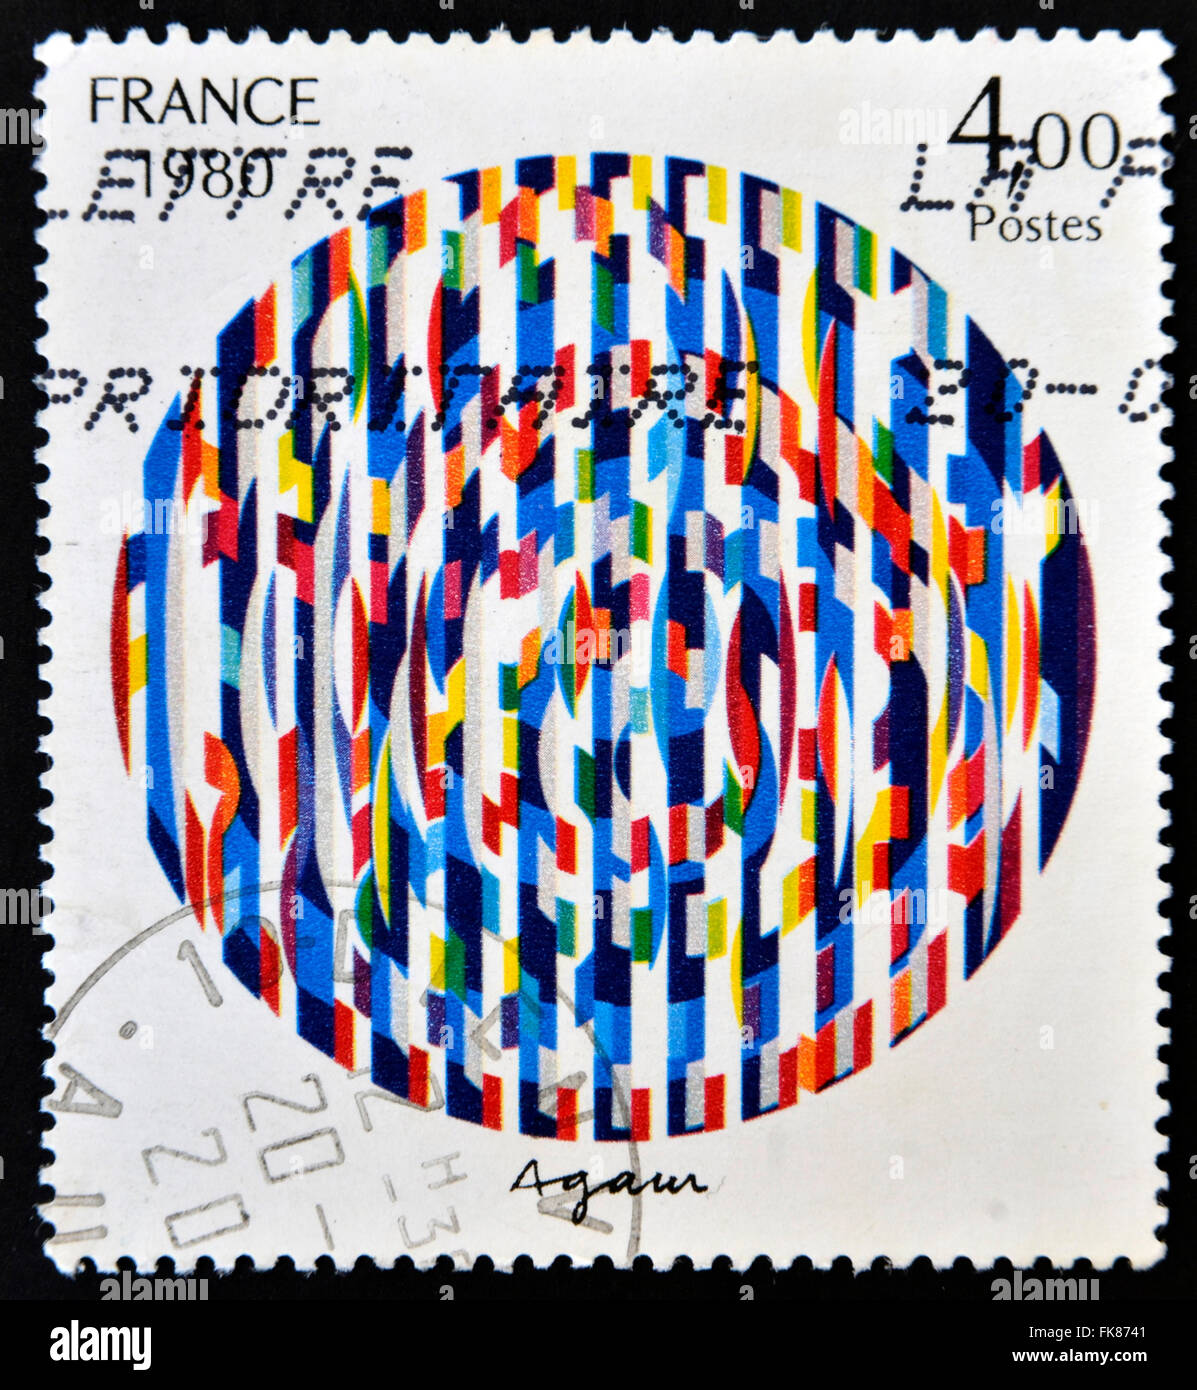 FRANCE - VERS 1980 : un timbre imprimé en France montre un message de paix, la peinture de Yaacov Agam, vers 1980 Banque D'Images